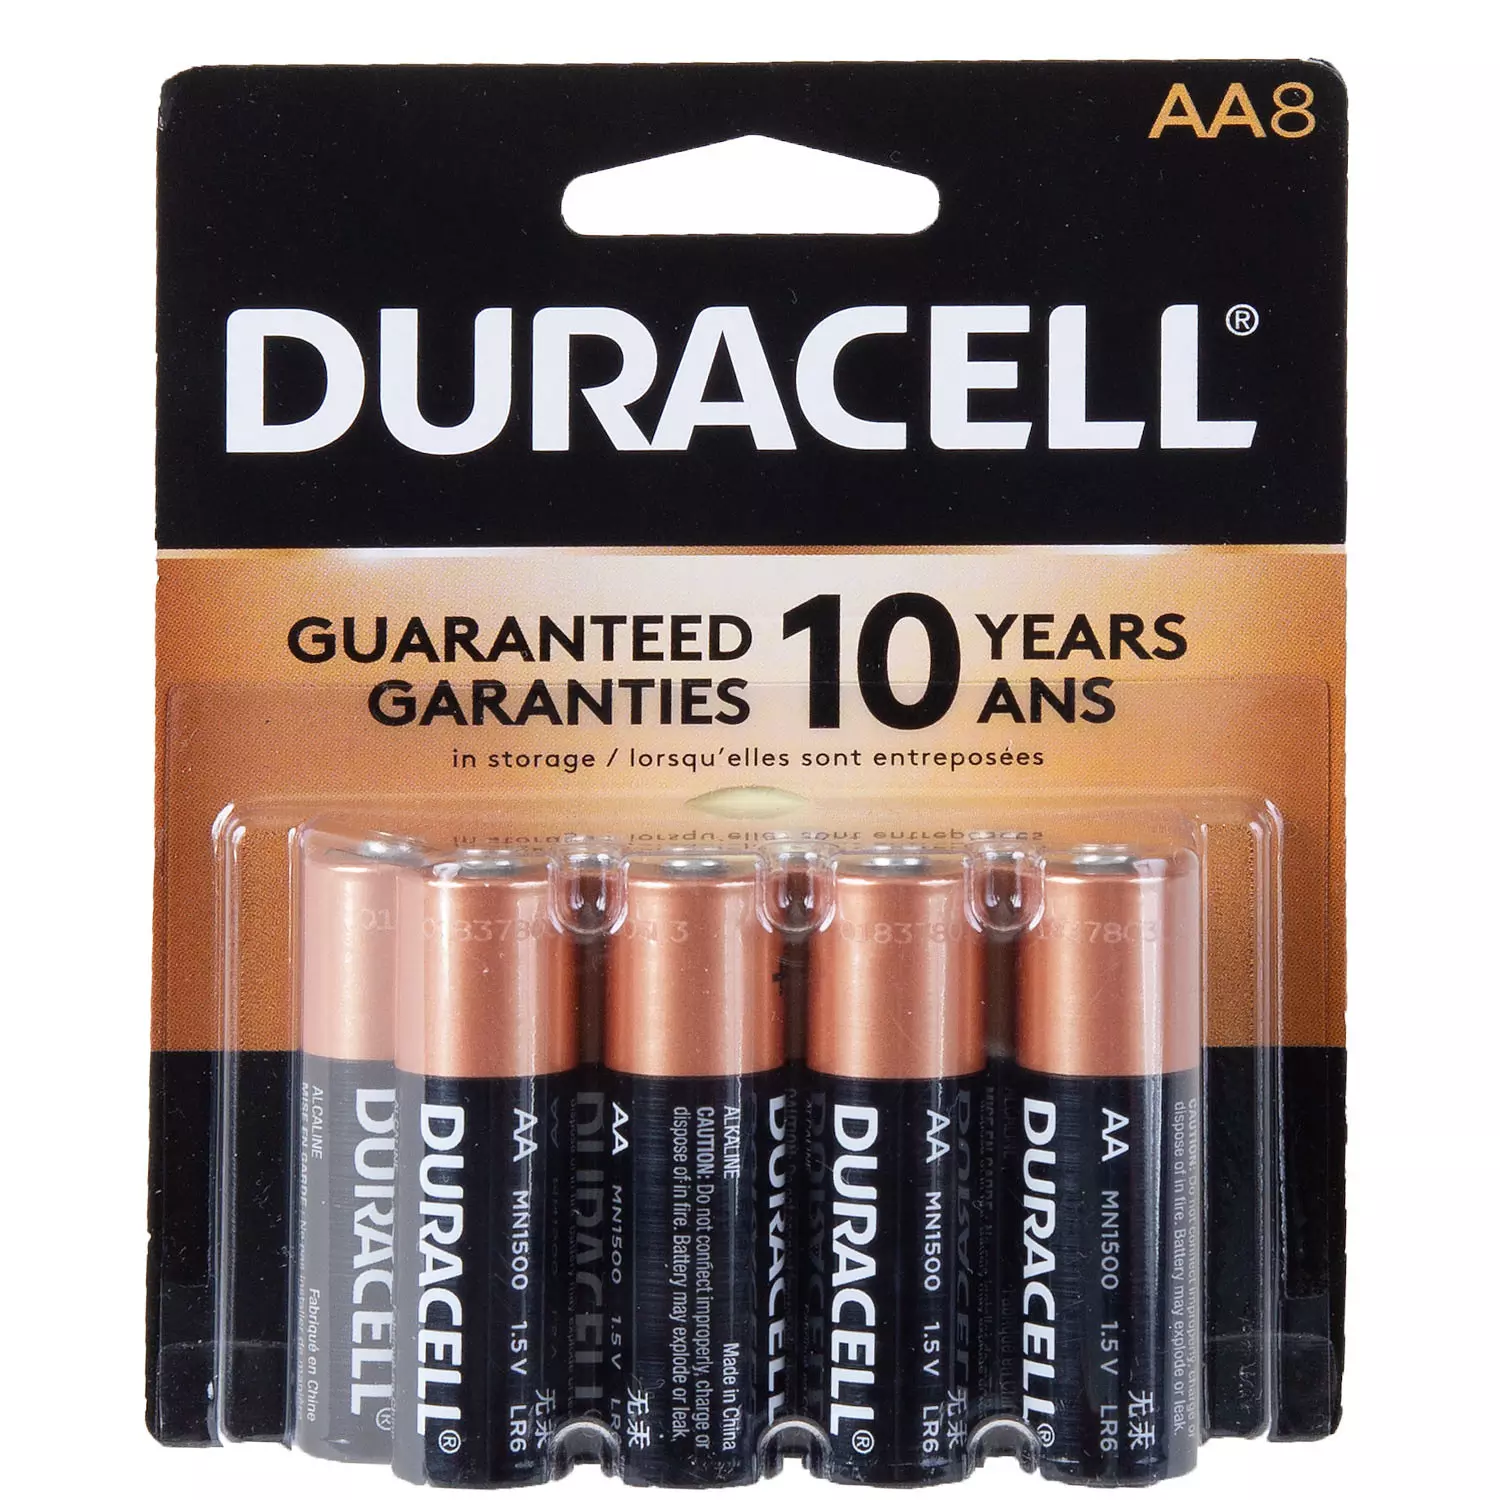 Duracell - Alkaline AA batteries, pk. of 8